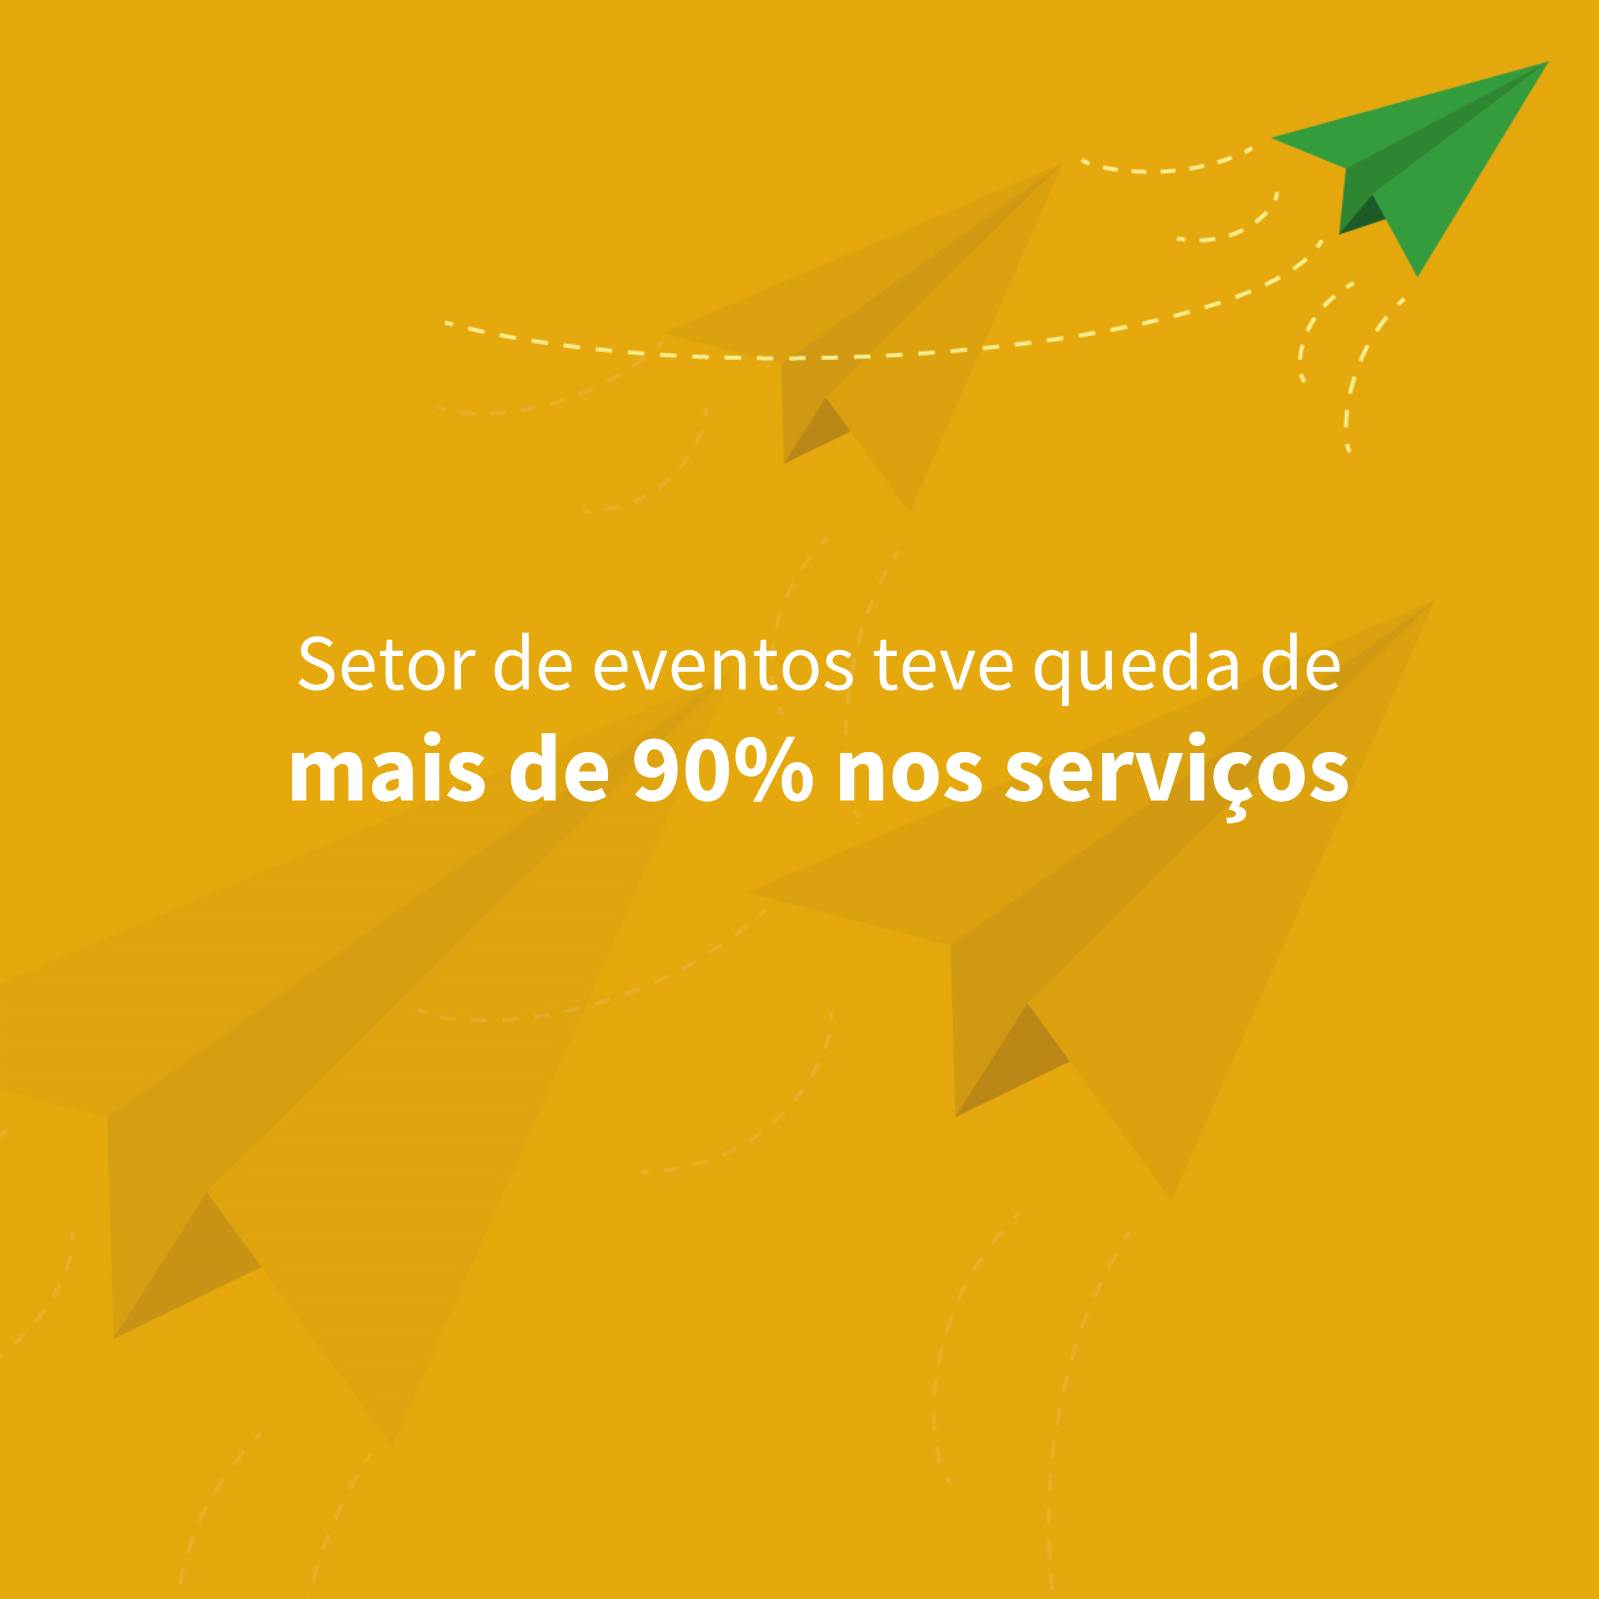 Arte com fundo amarelo dizendo que setor de eventos teve queda de até 90% dos serviços